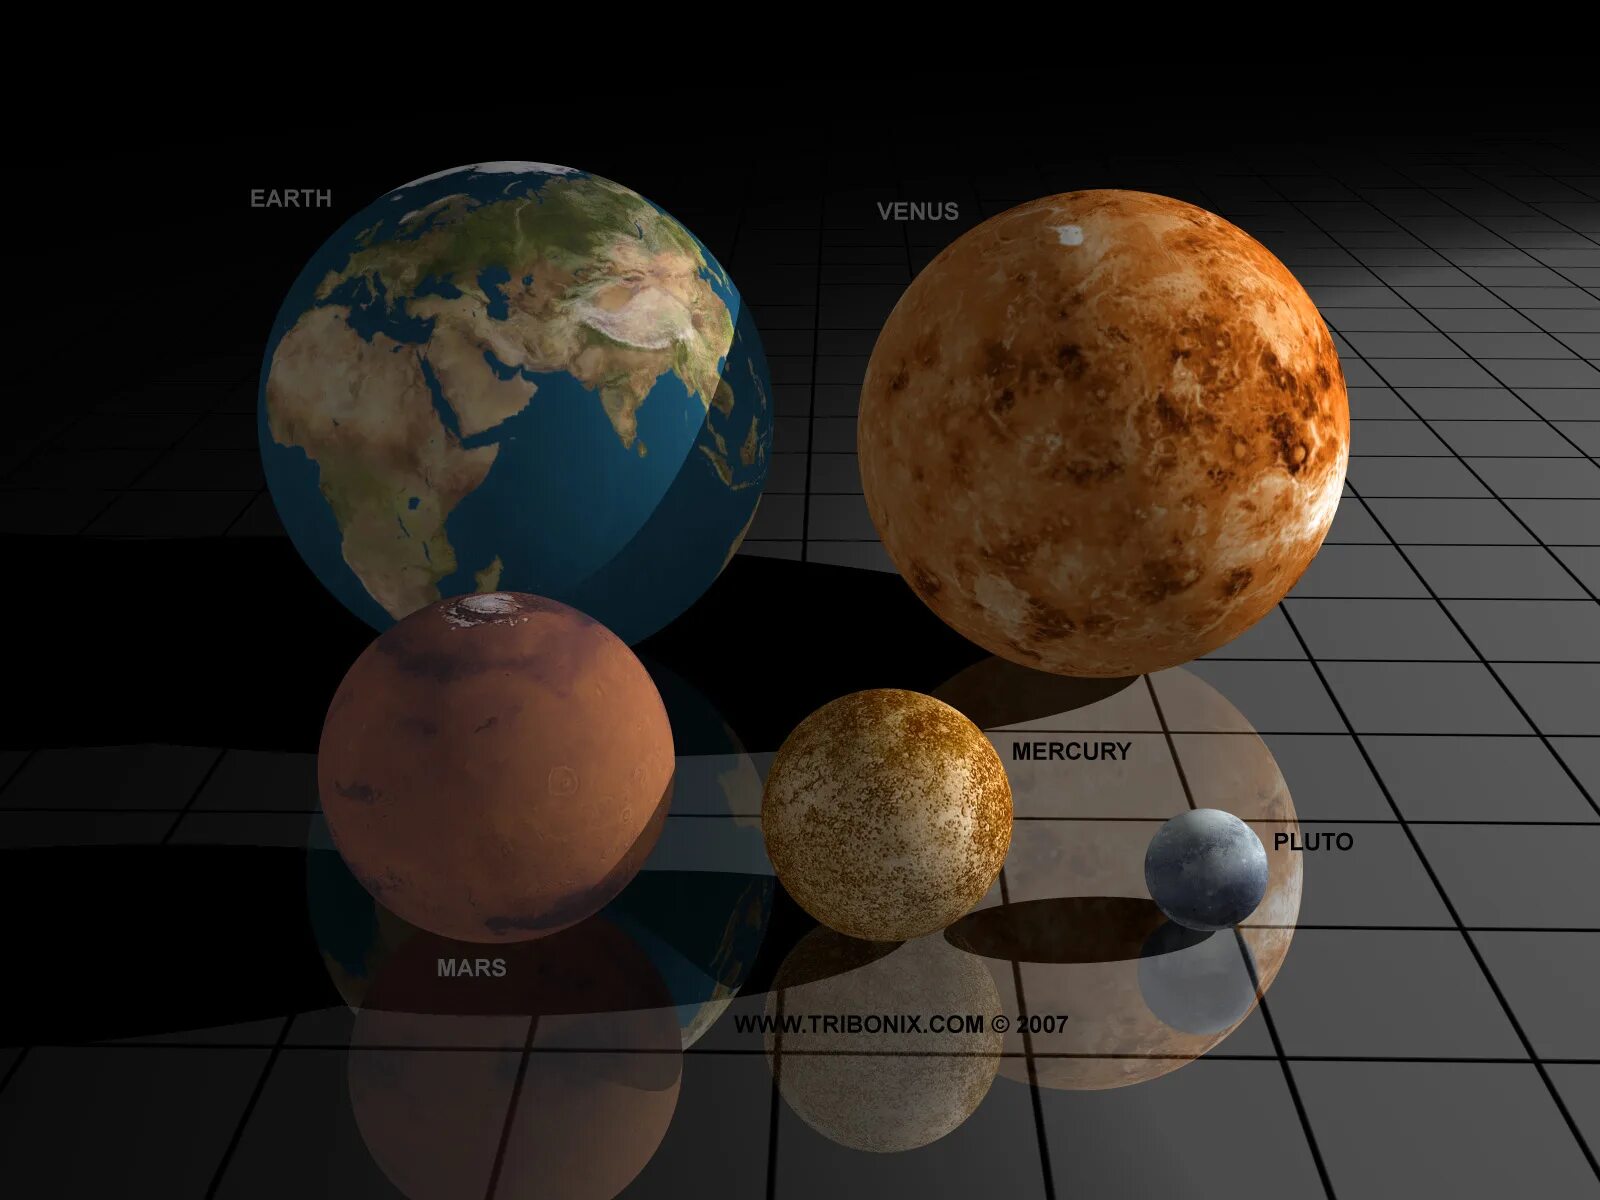 Меркурий и Плутон. Планеты в реальном масштабе. Планеты по величине. Земля и другие планеты.